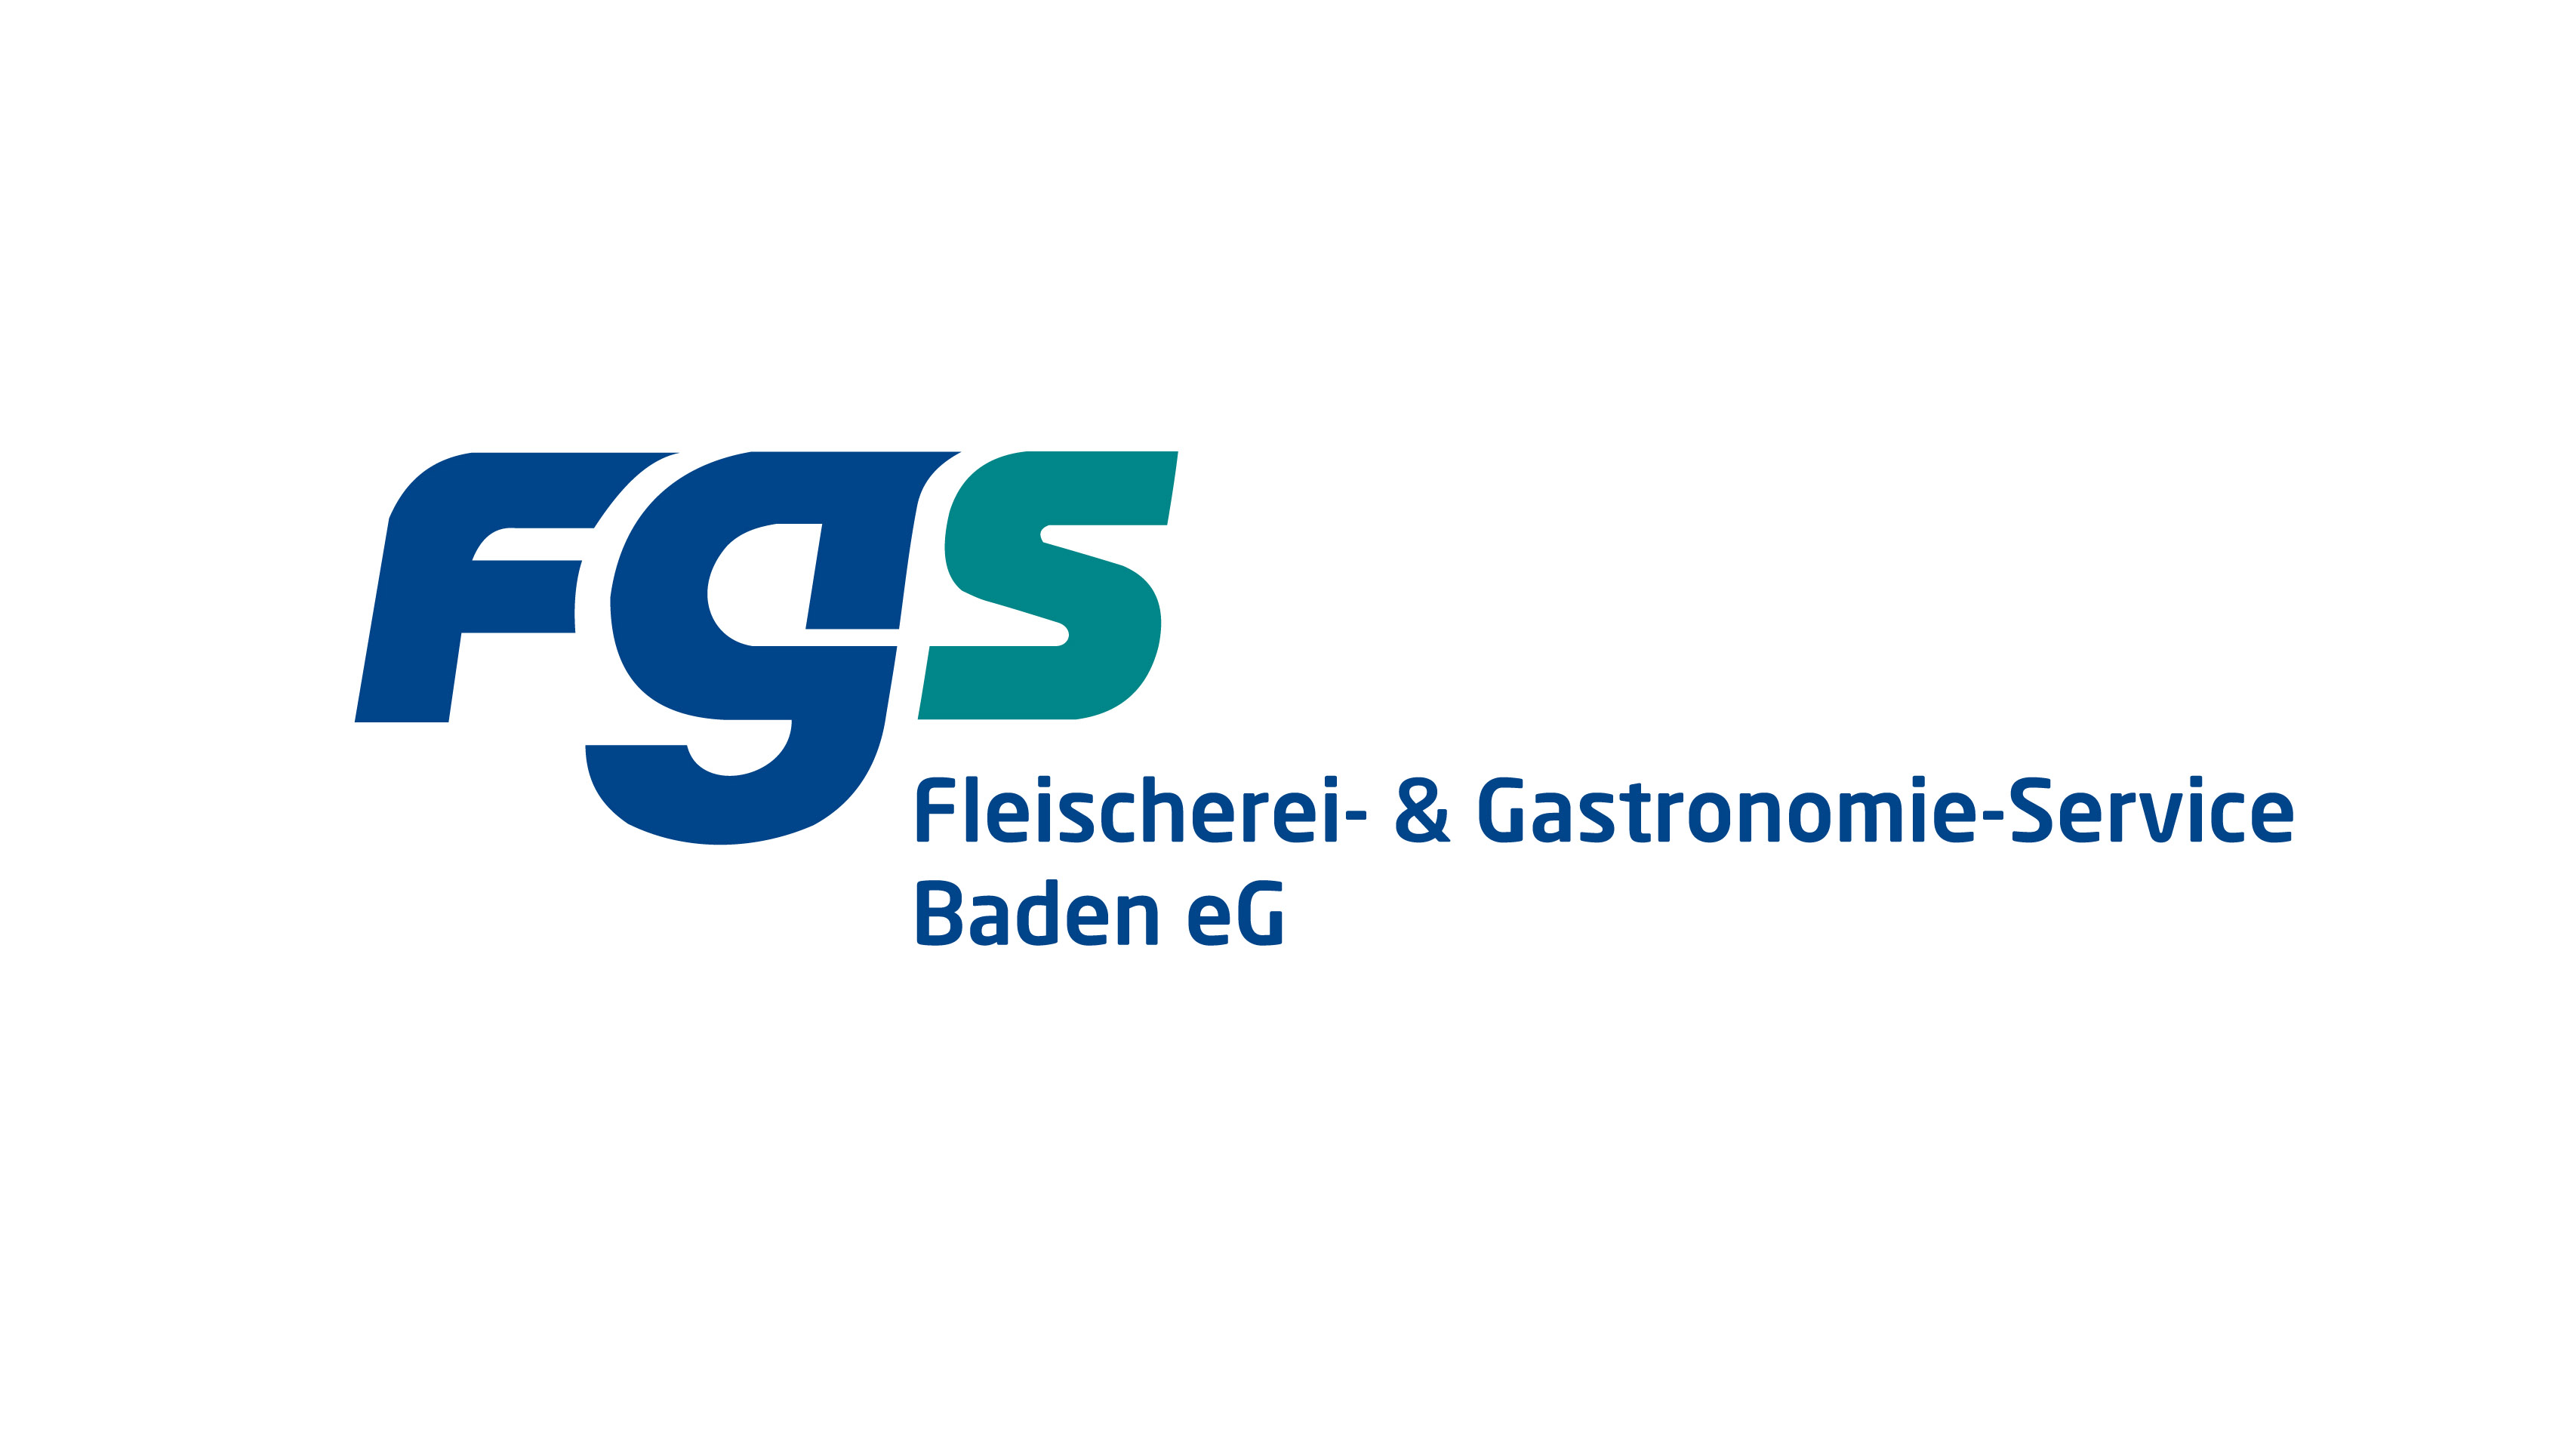 FGS logo_fgs_baden-neu